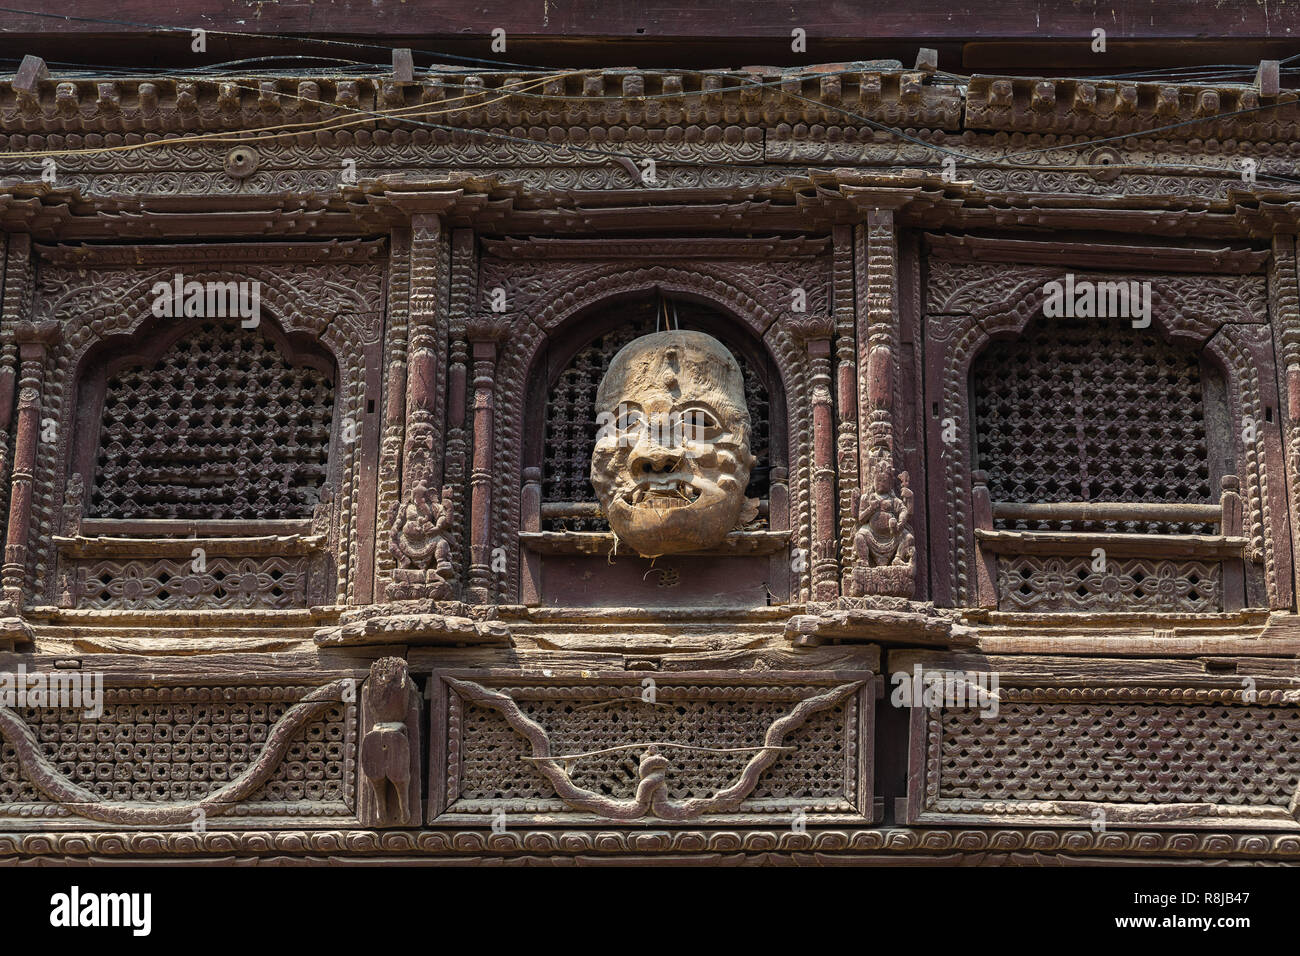 Dettaglio della finestra e la maschera a mano appesa all'esterno dell'edificio in Durbar Square a Kathmandu in Nepal Foto Stock